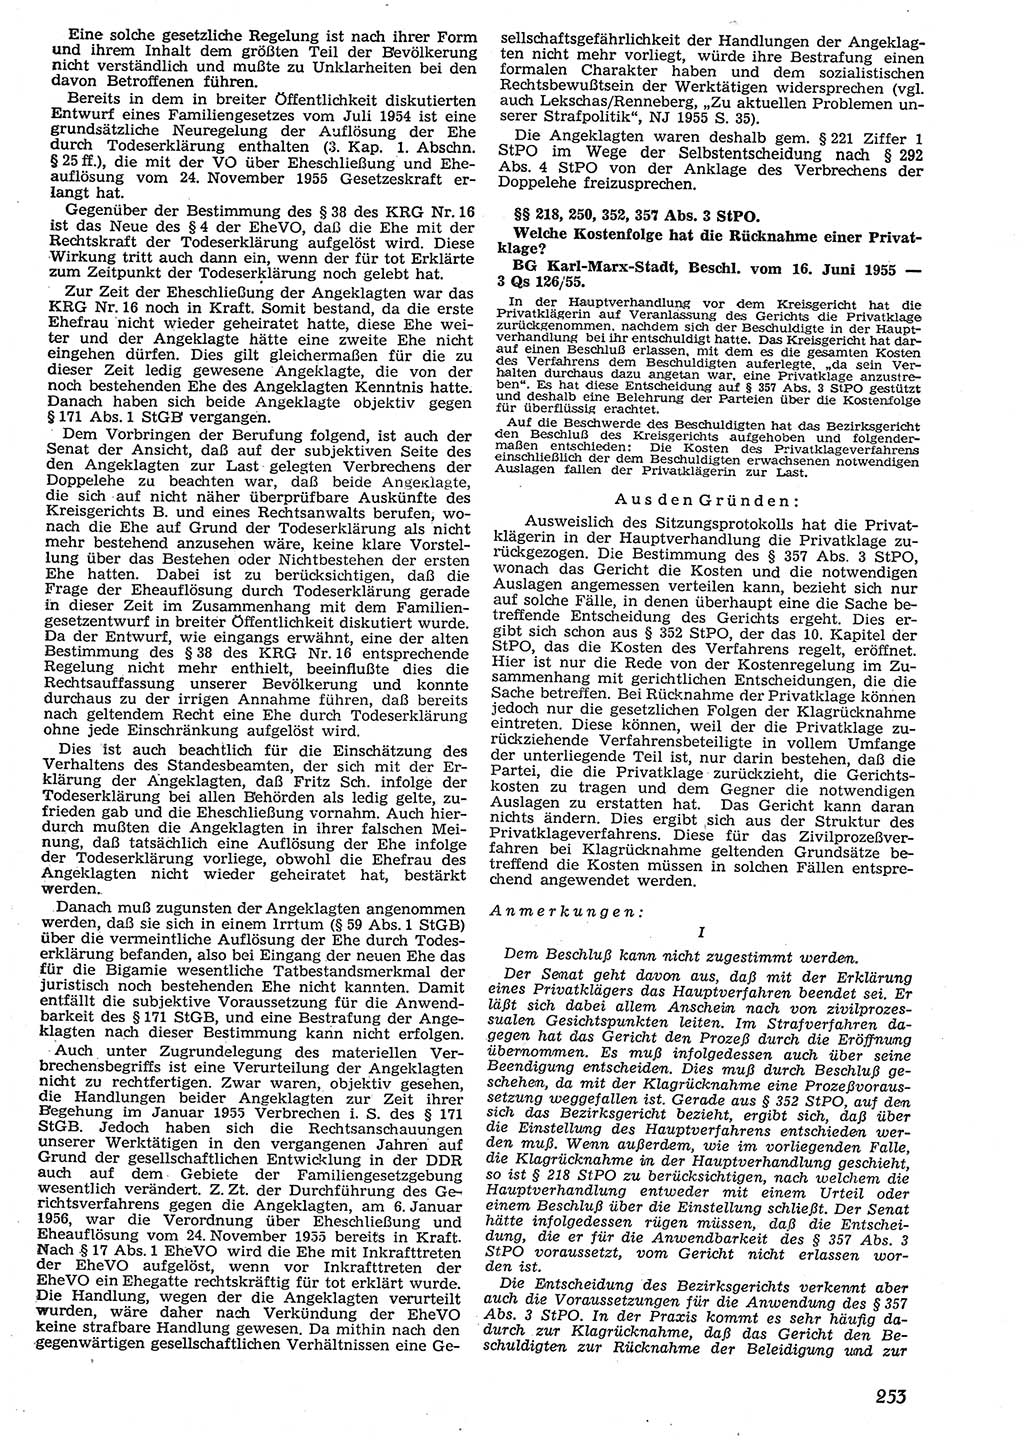 Neue Justiz (NJ), Zeitschrift für Recht und Rechtswissenschaft [Deutsche Demokratische Republik (DDR)], 10. Jahrgang 1956, Seite 253 (NJ DDR 1956, S. 253)